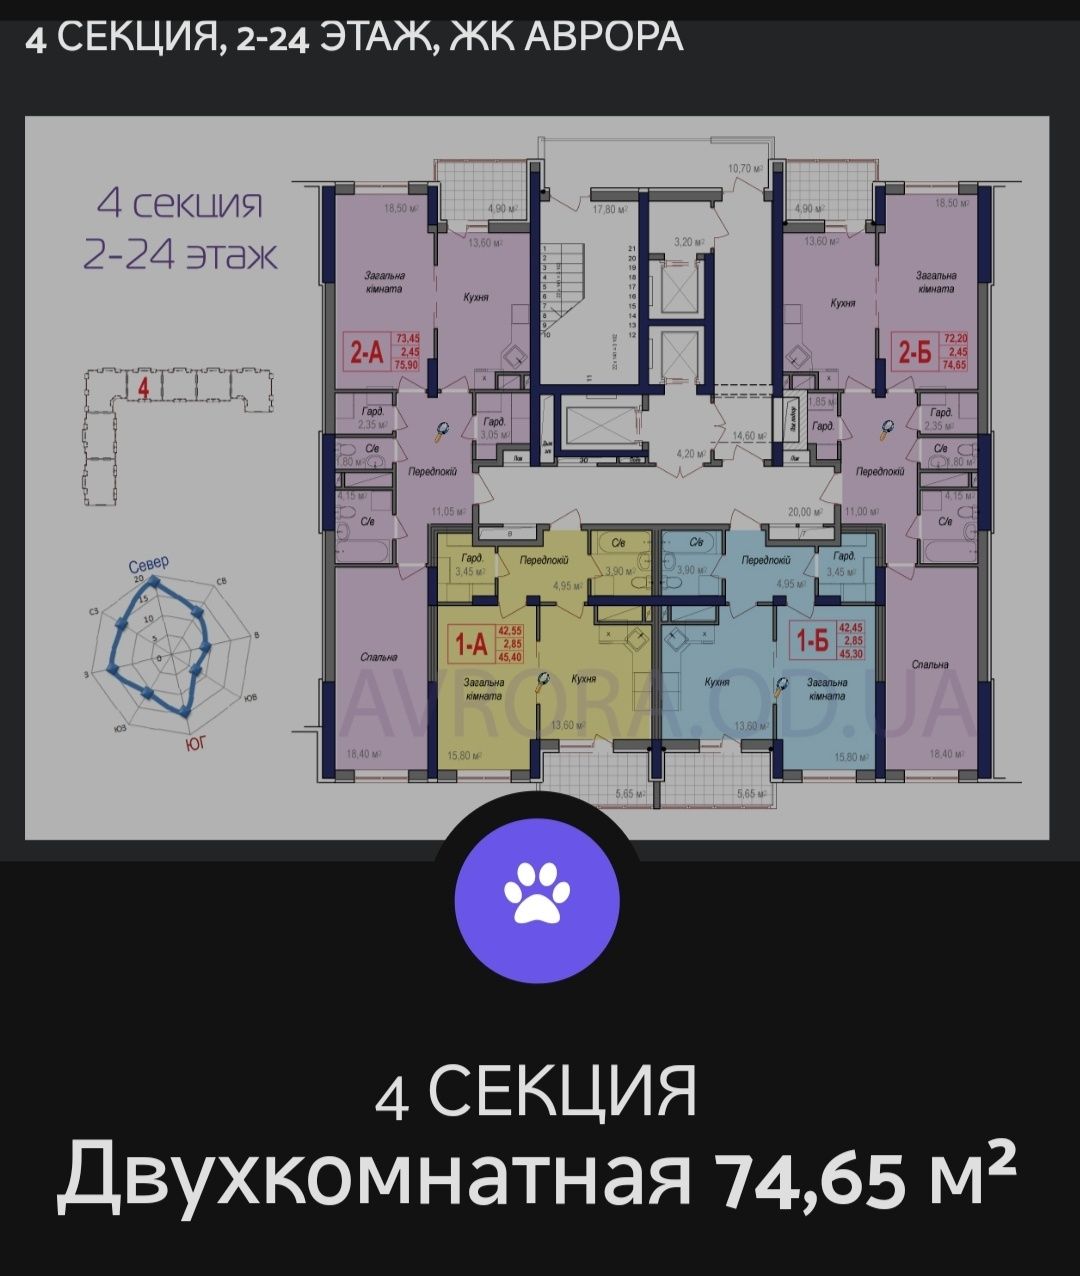 Своя 2-к квартира,ЖК "АВРОРА",Черёмушки